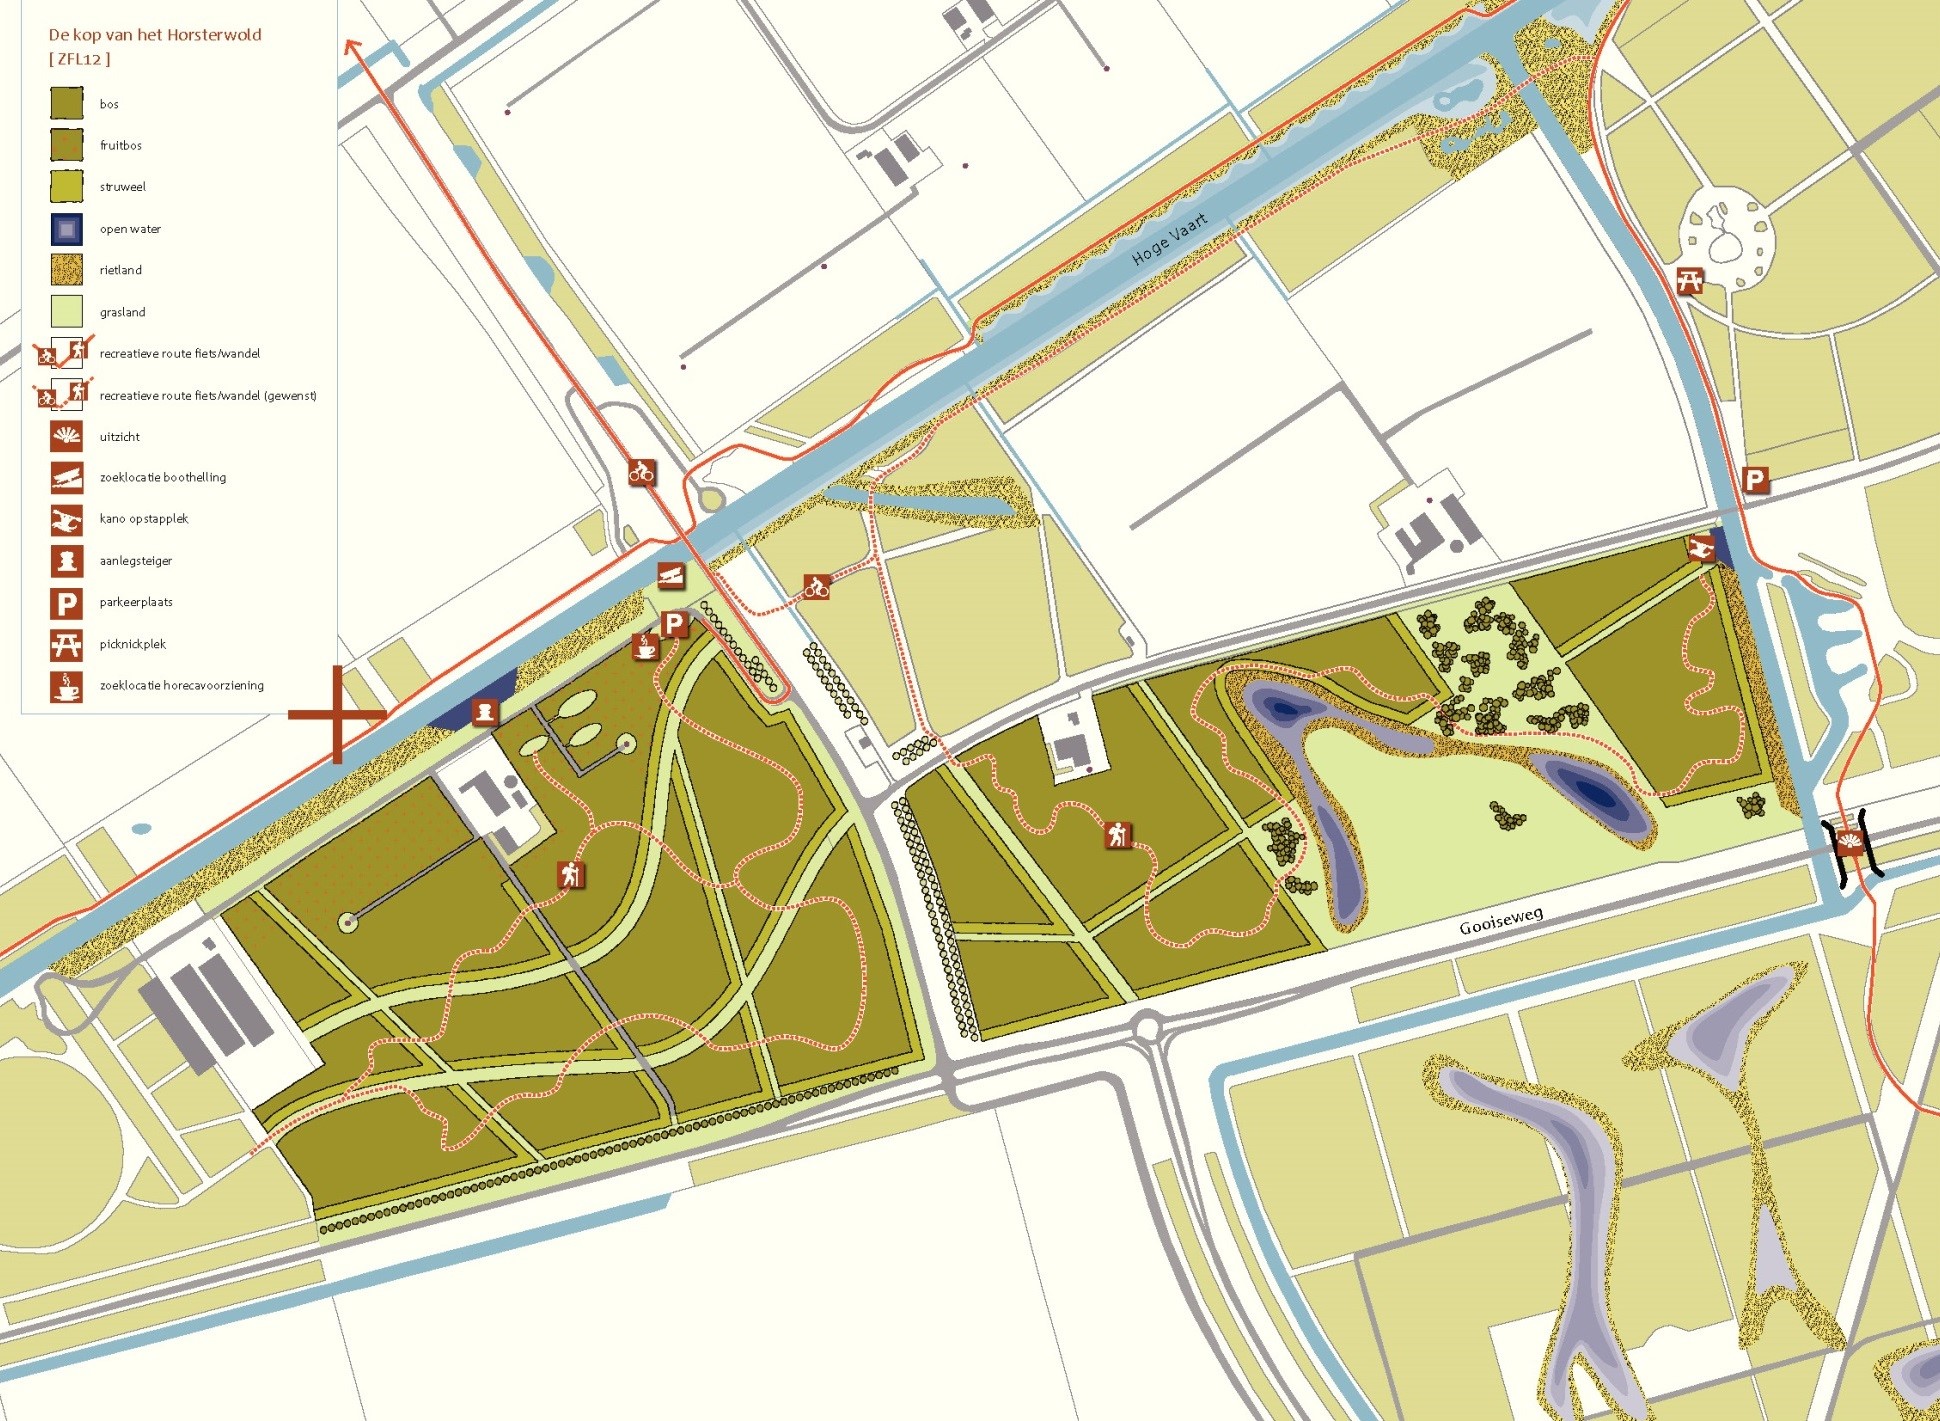 Kaart projectgebied “Kop van het Horsterwold”